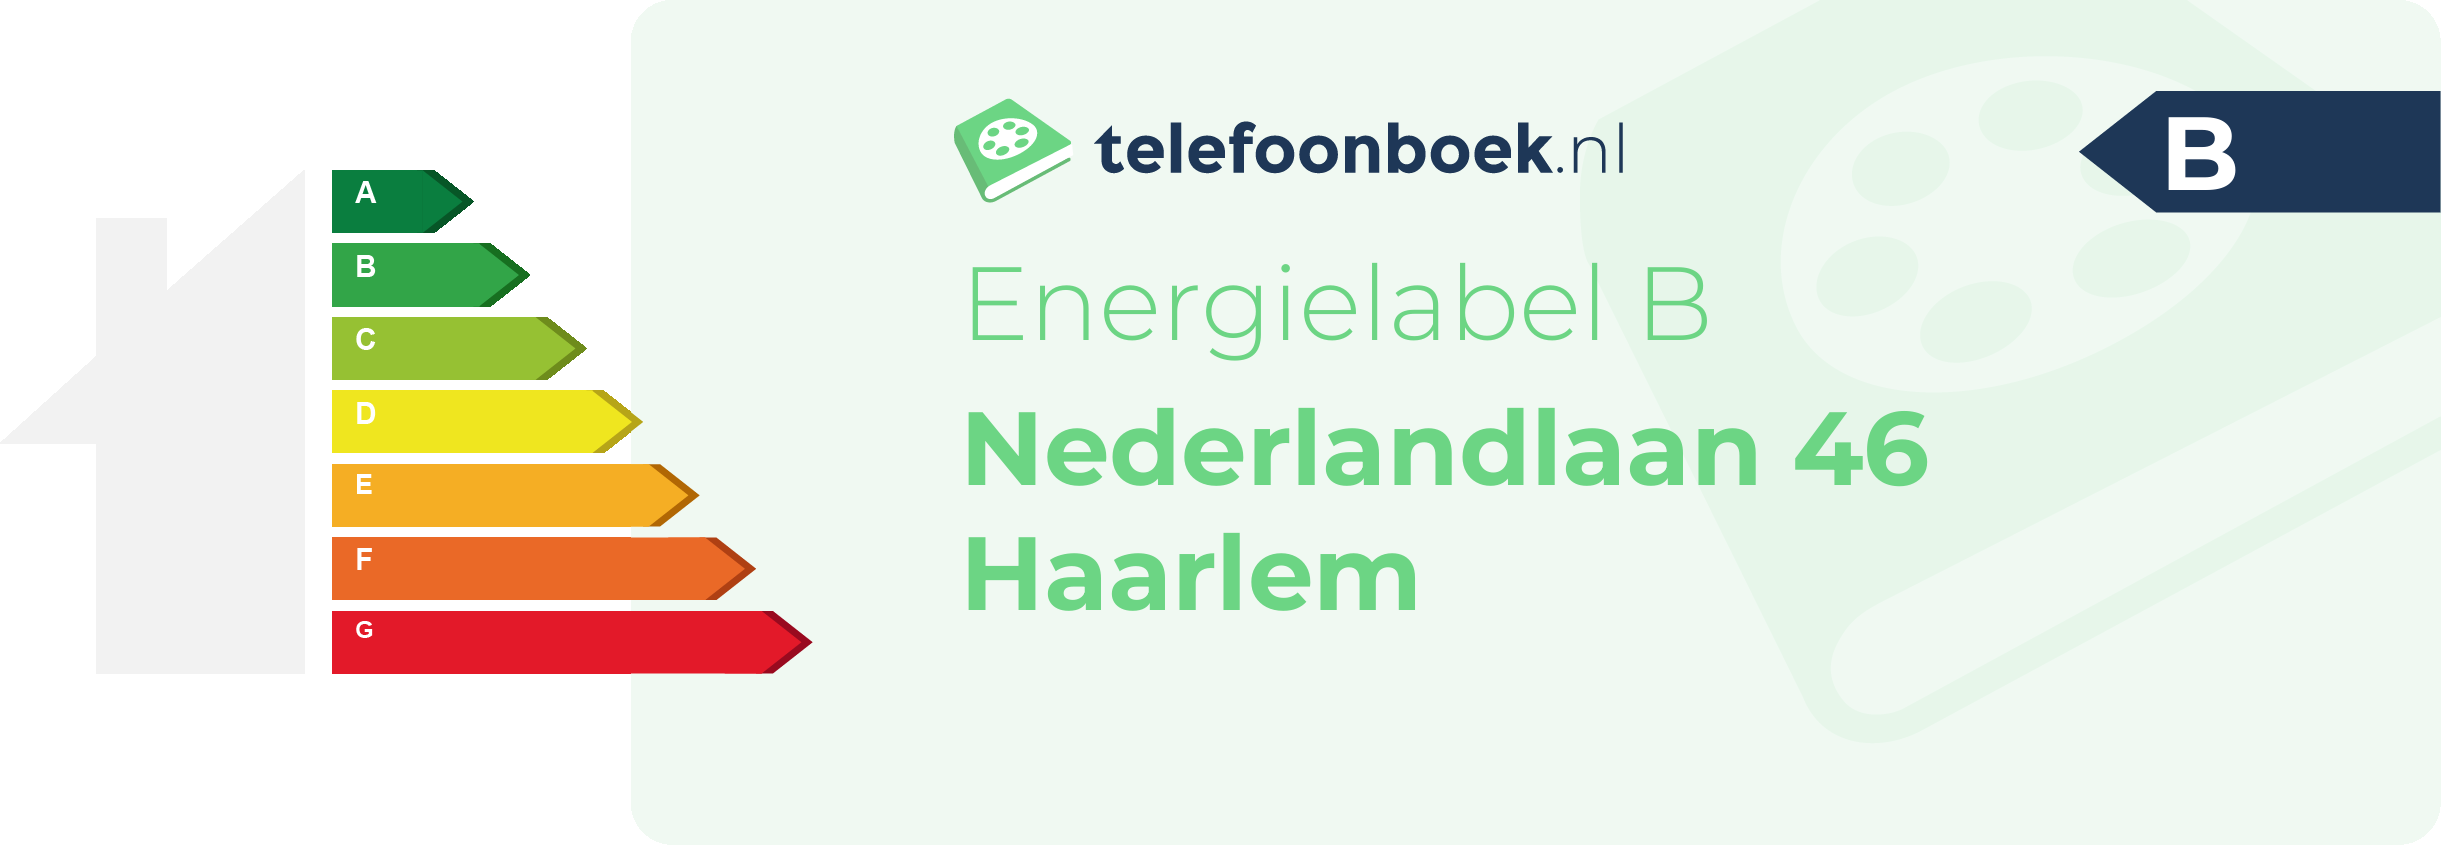 Energielabel Nederlandlaan 46 Haarlem